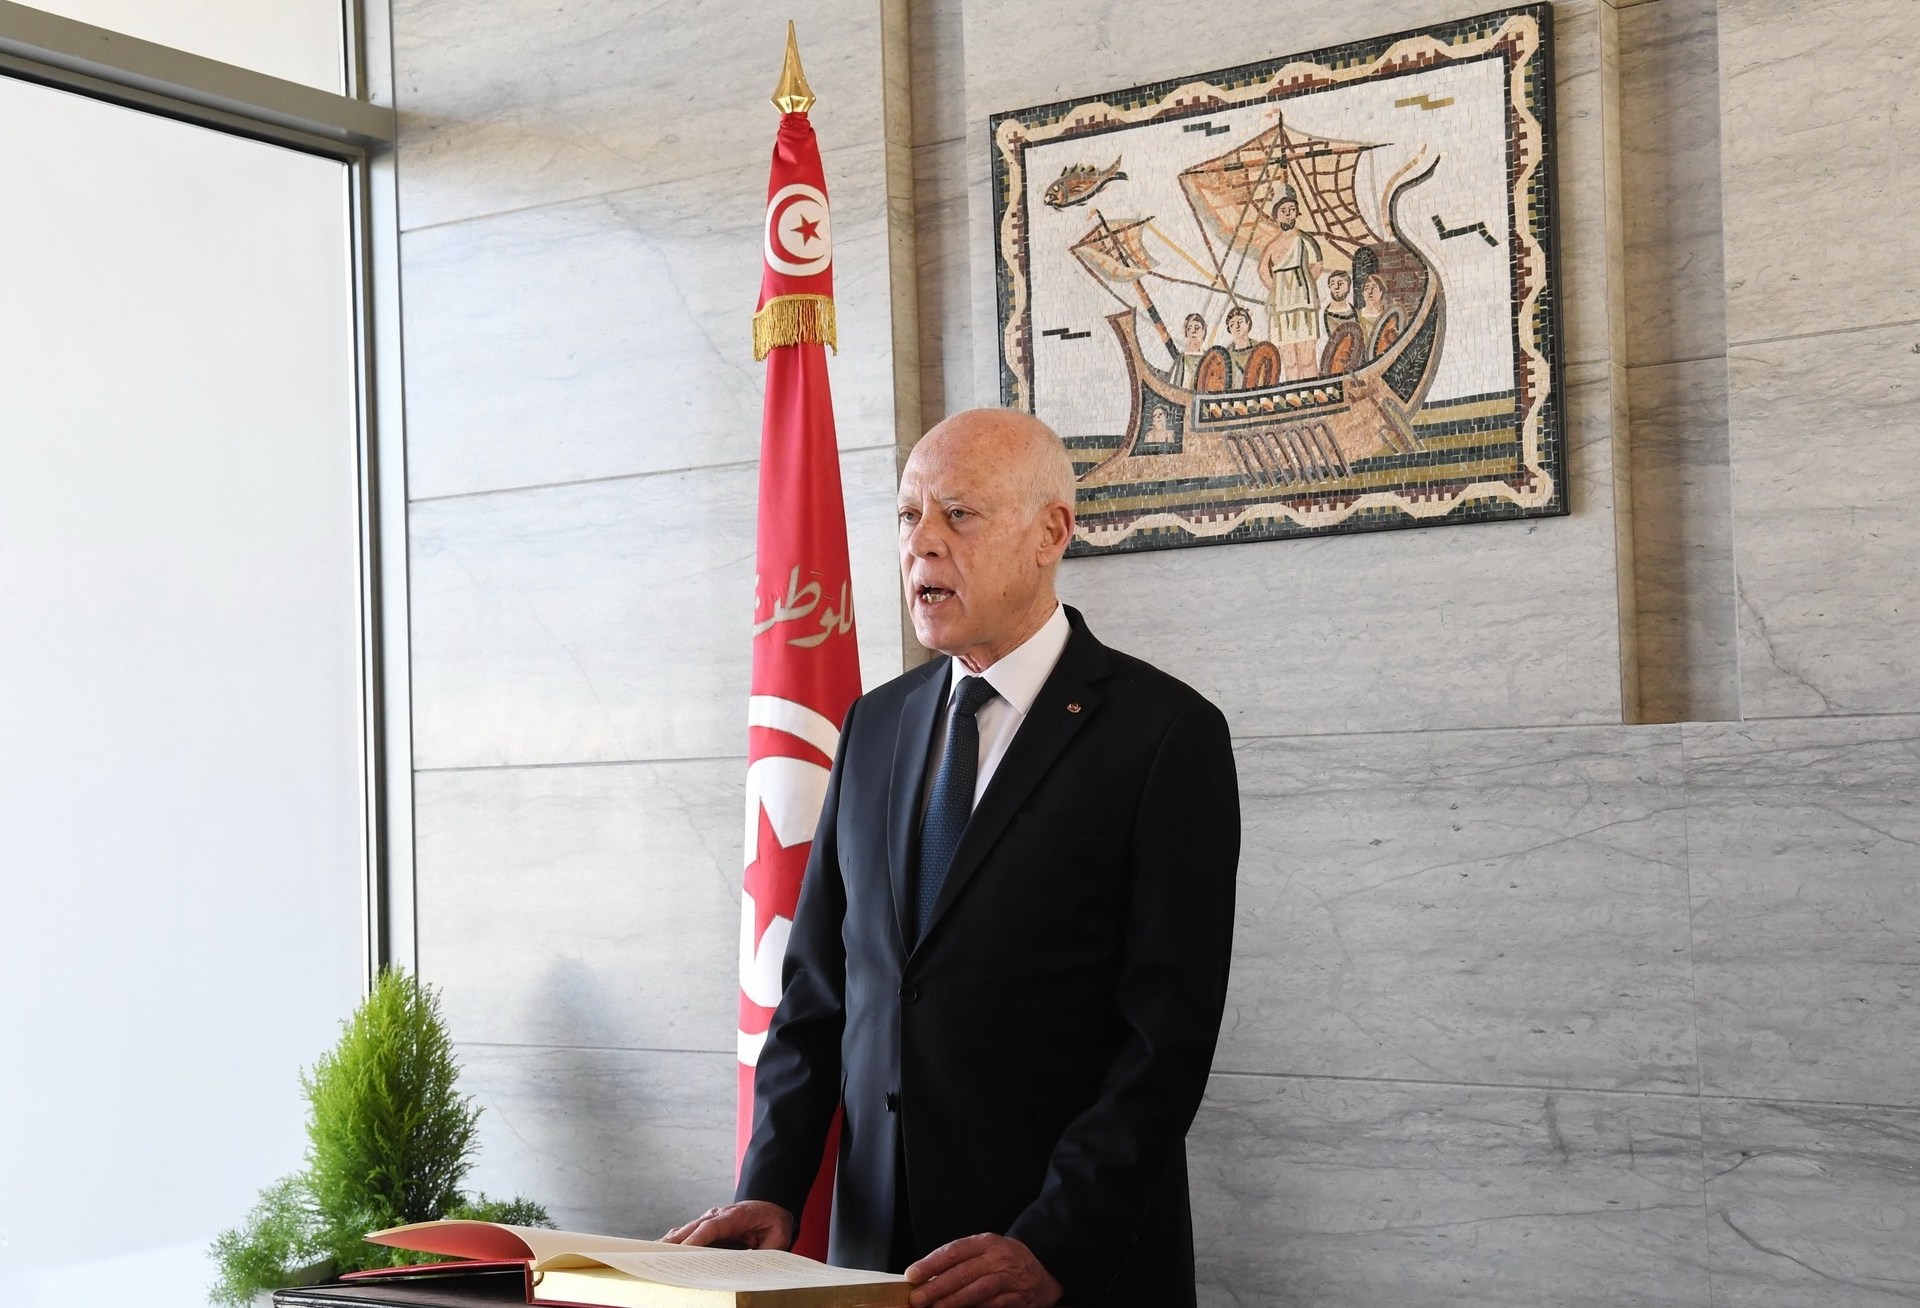 أي اعتبارات إقليمية ودوليّة تحيط بالانتخابات الرئاسيّة المرتقبة في تونس؟ | سياسة – البوكس نيوز